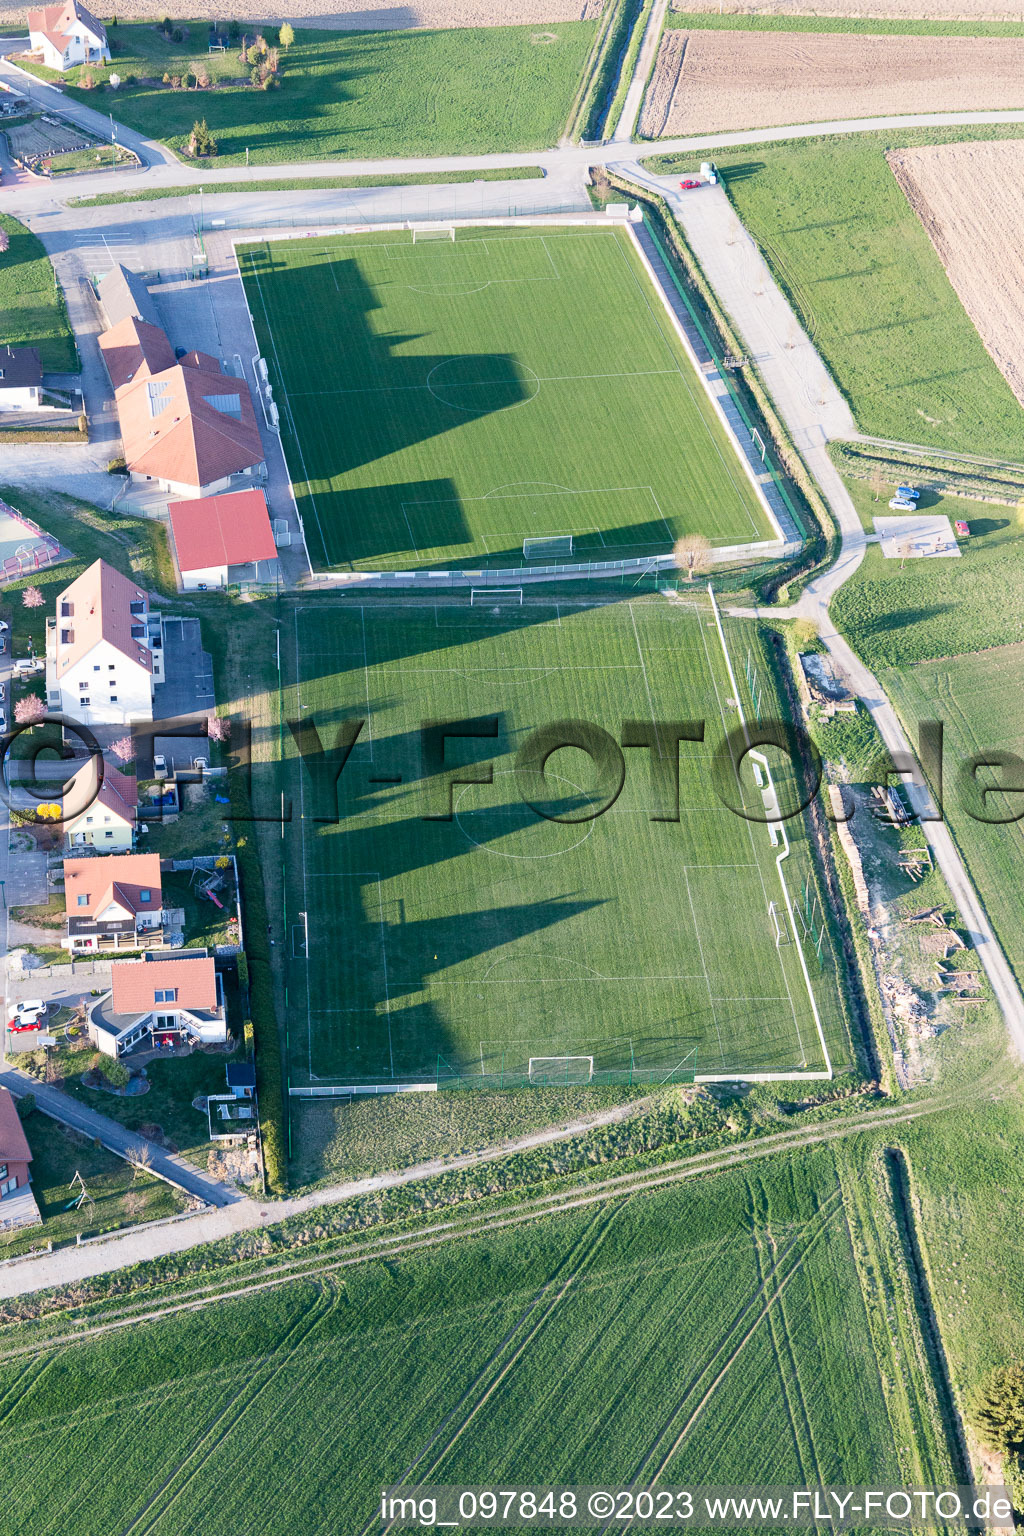 Oberlauterbach im Bundesland Bas-Rhin, Frankreich aus der Drohnenperspektive